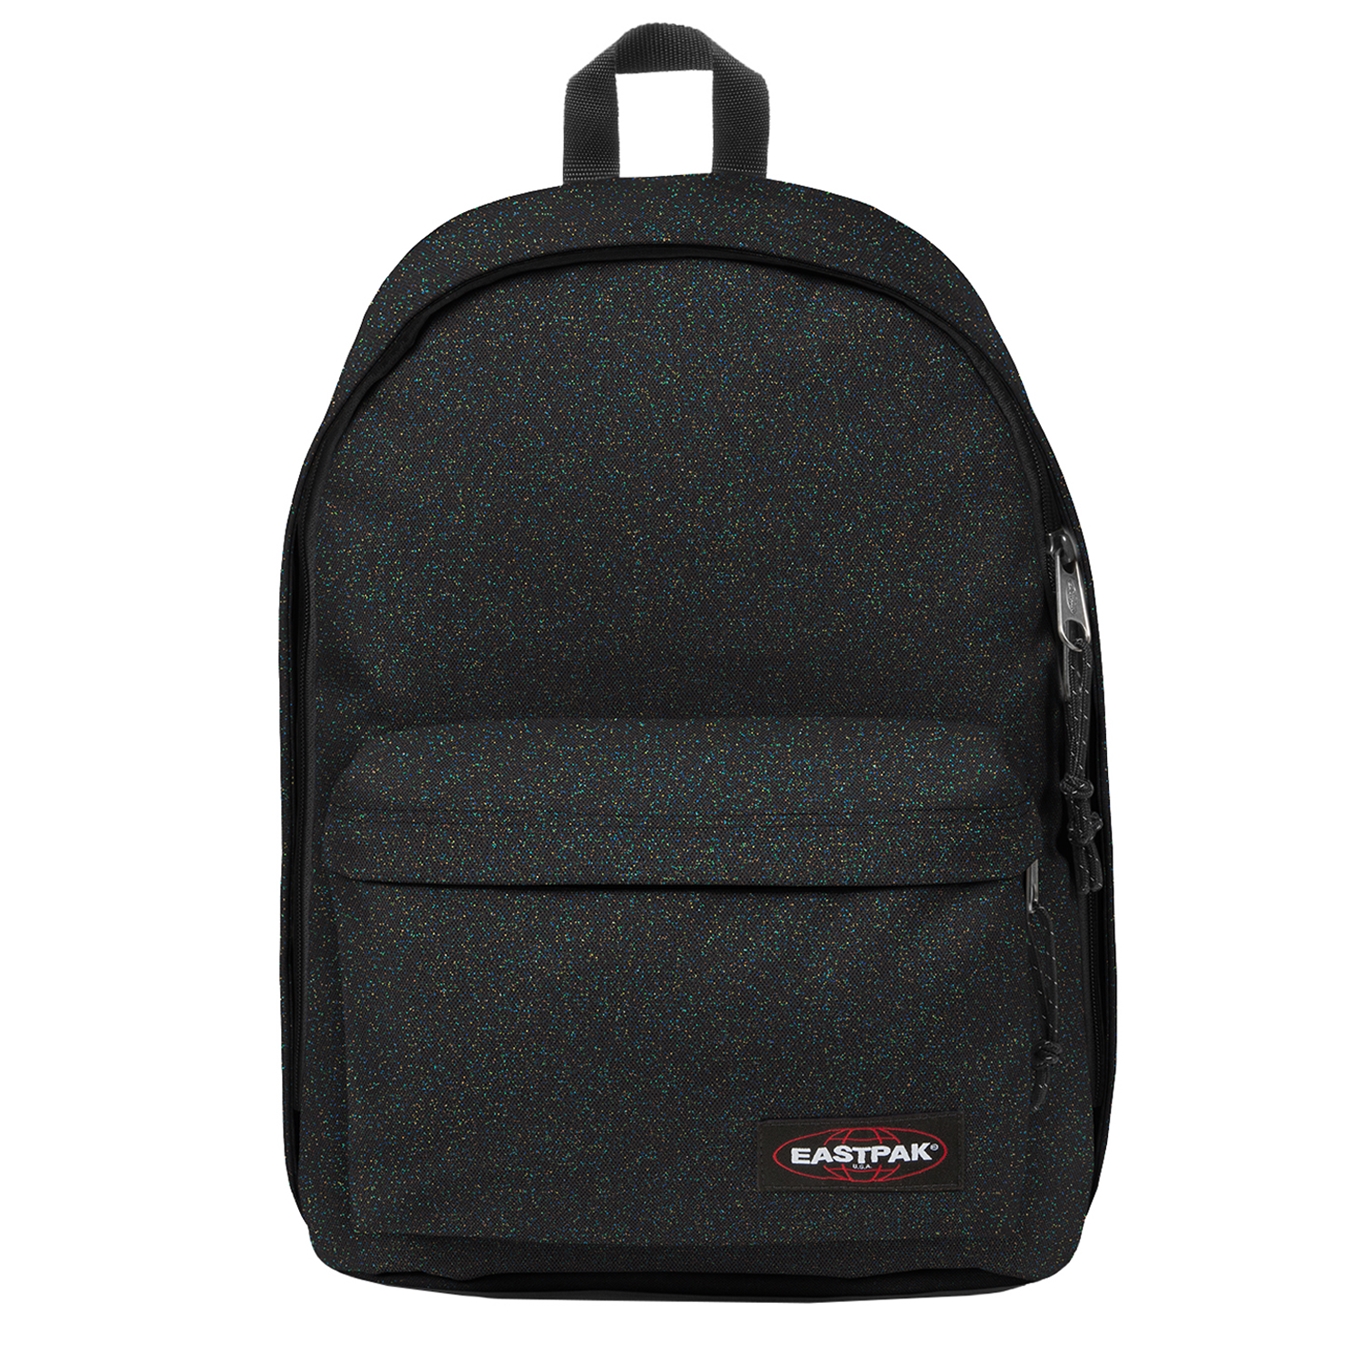 Eastpak Out of Office glitdark backpack